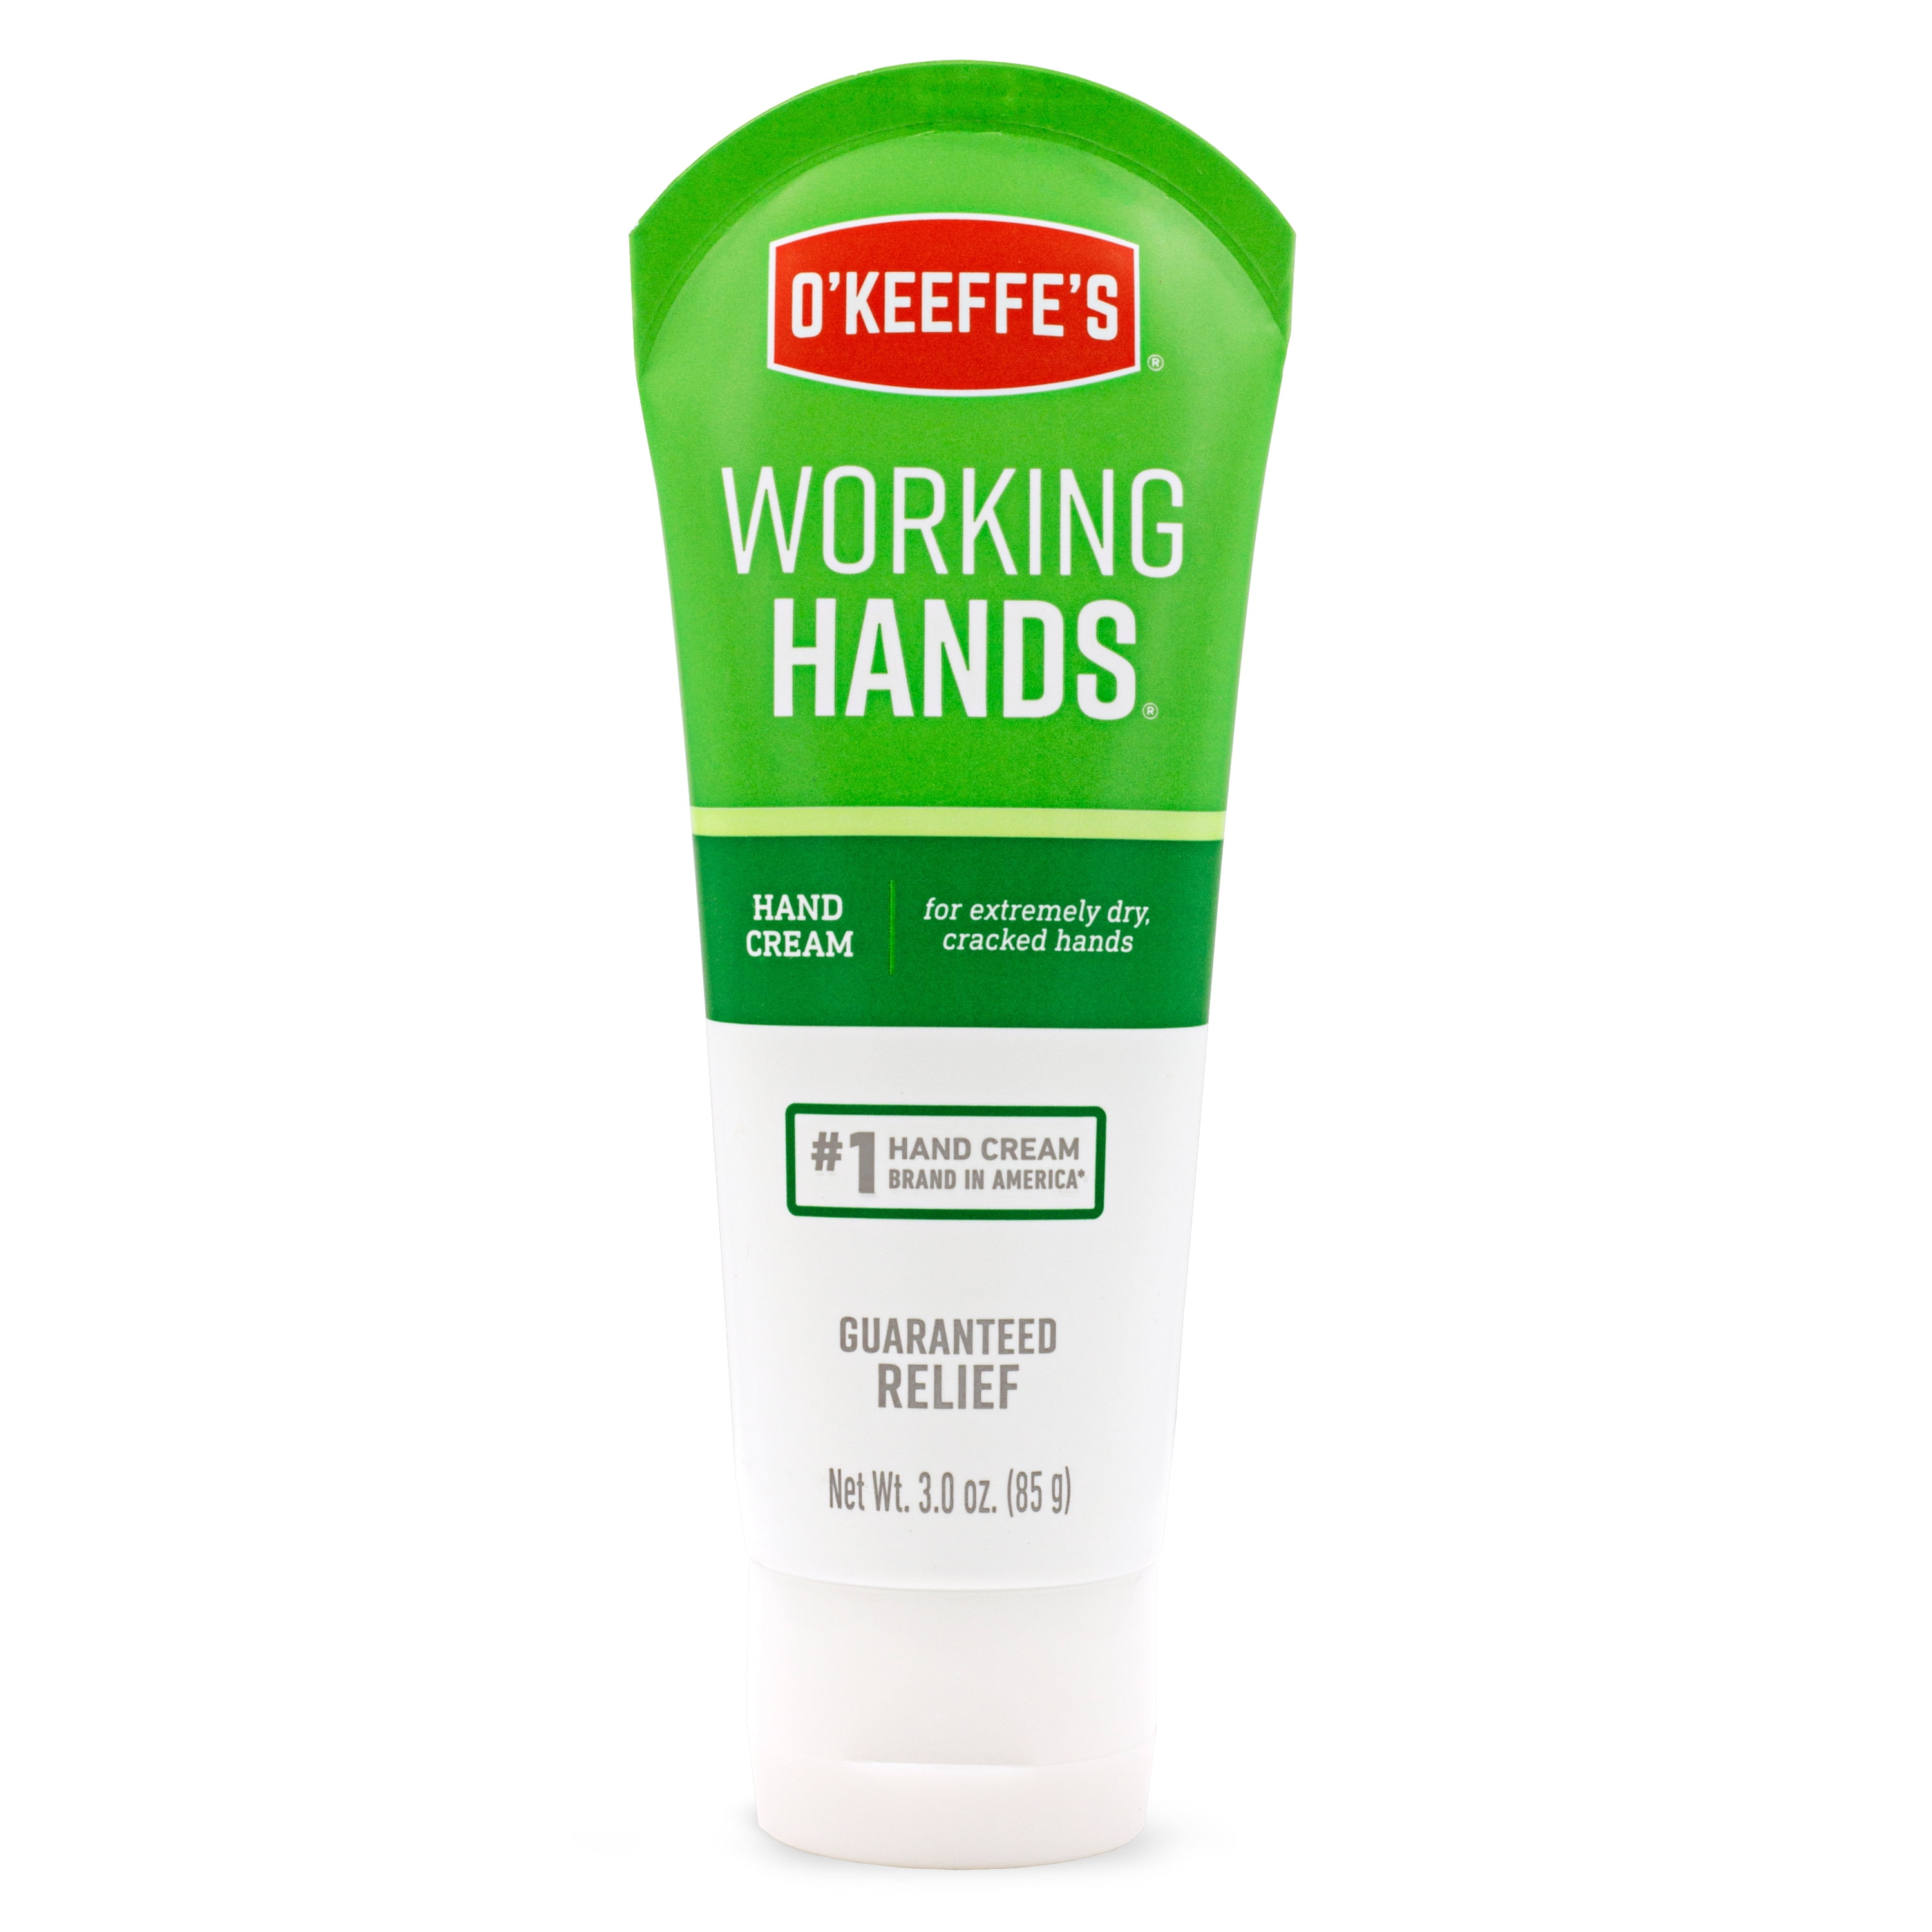 limoen Hertellen Compliment O'Keeffe's Working Hands Hand Cream, 3 oz Tube - Walmart.com